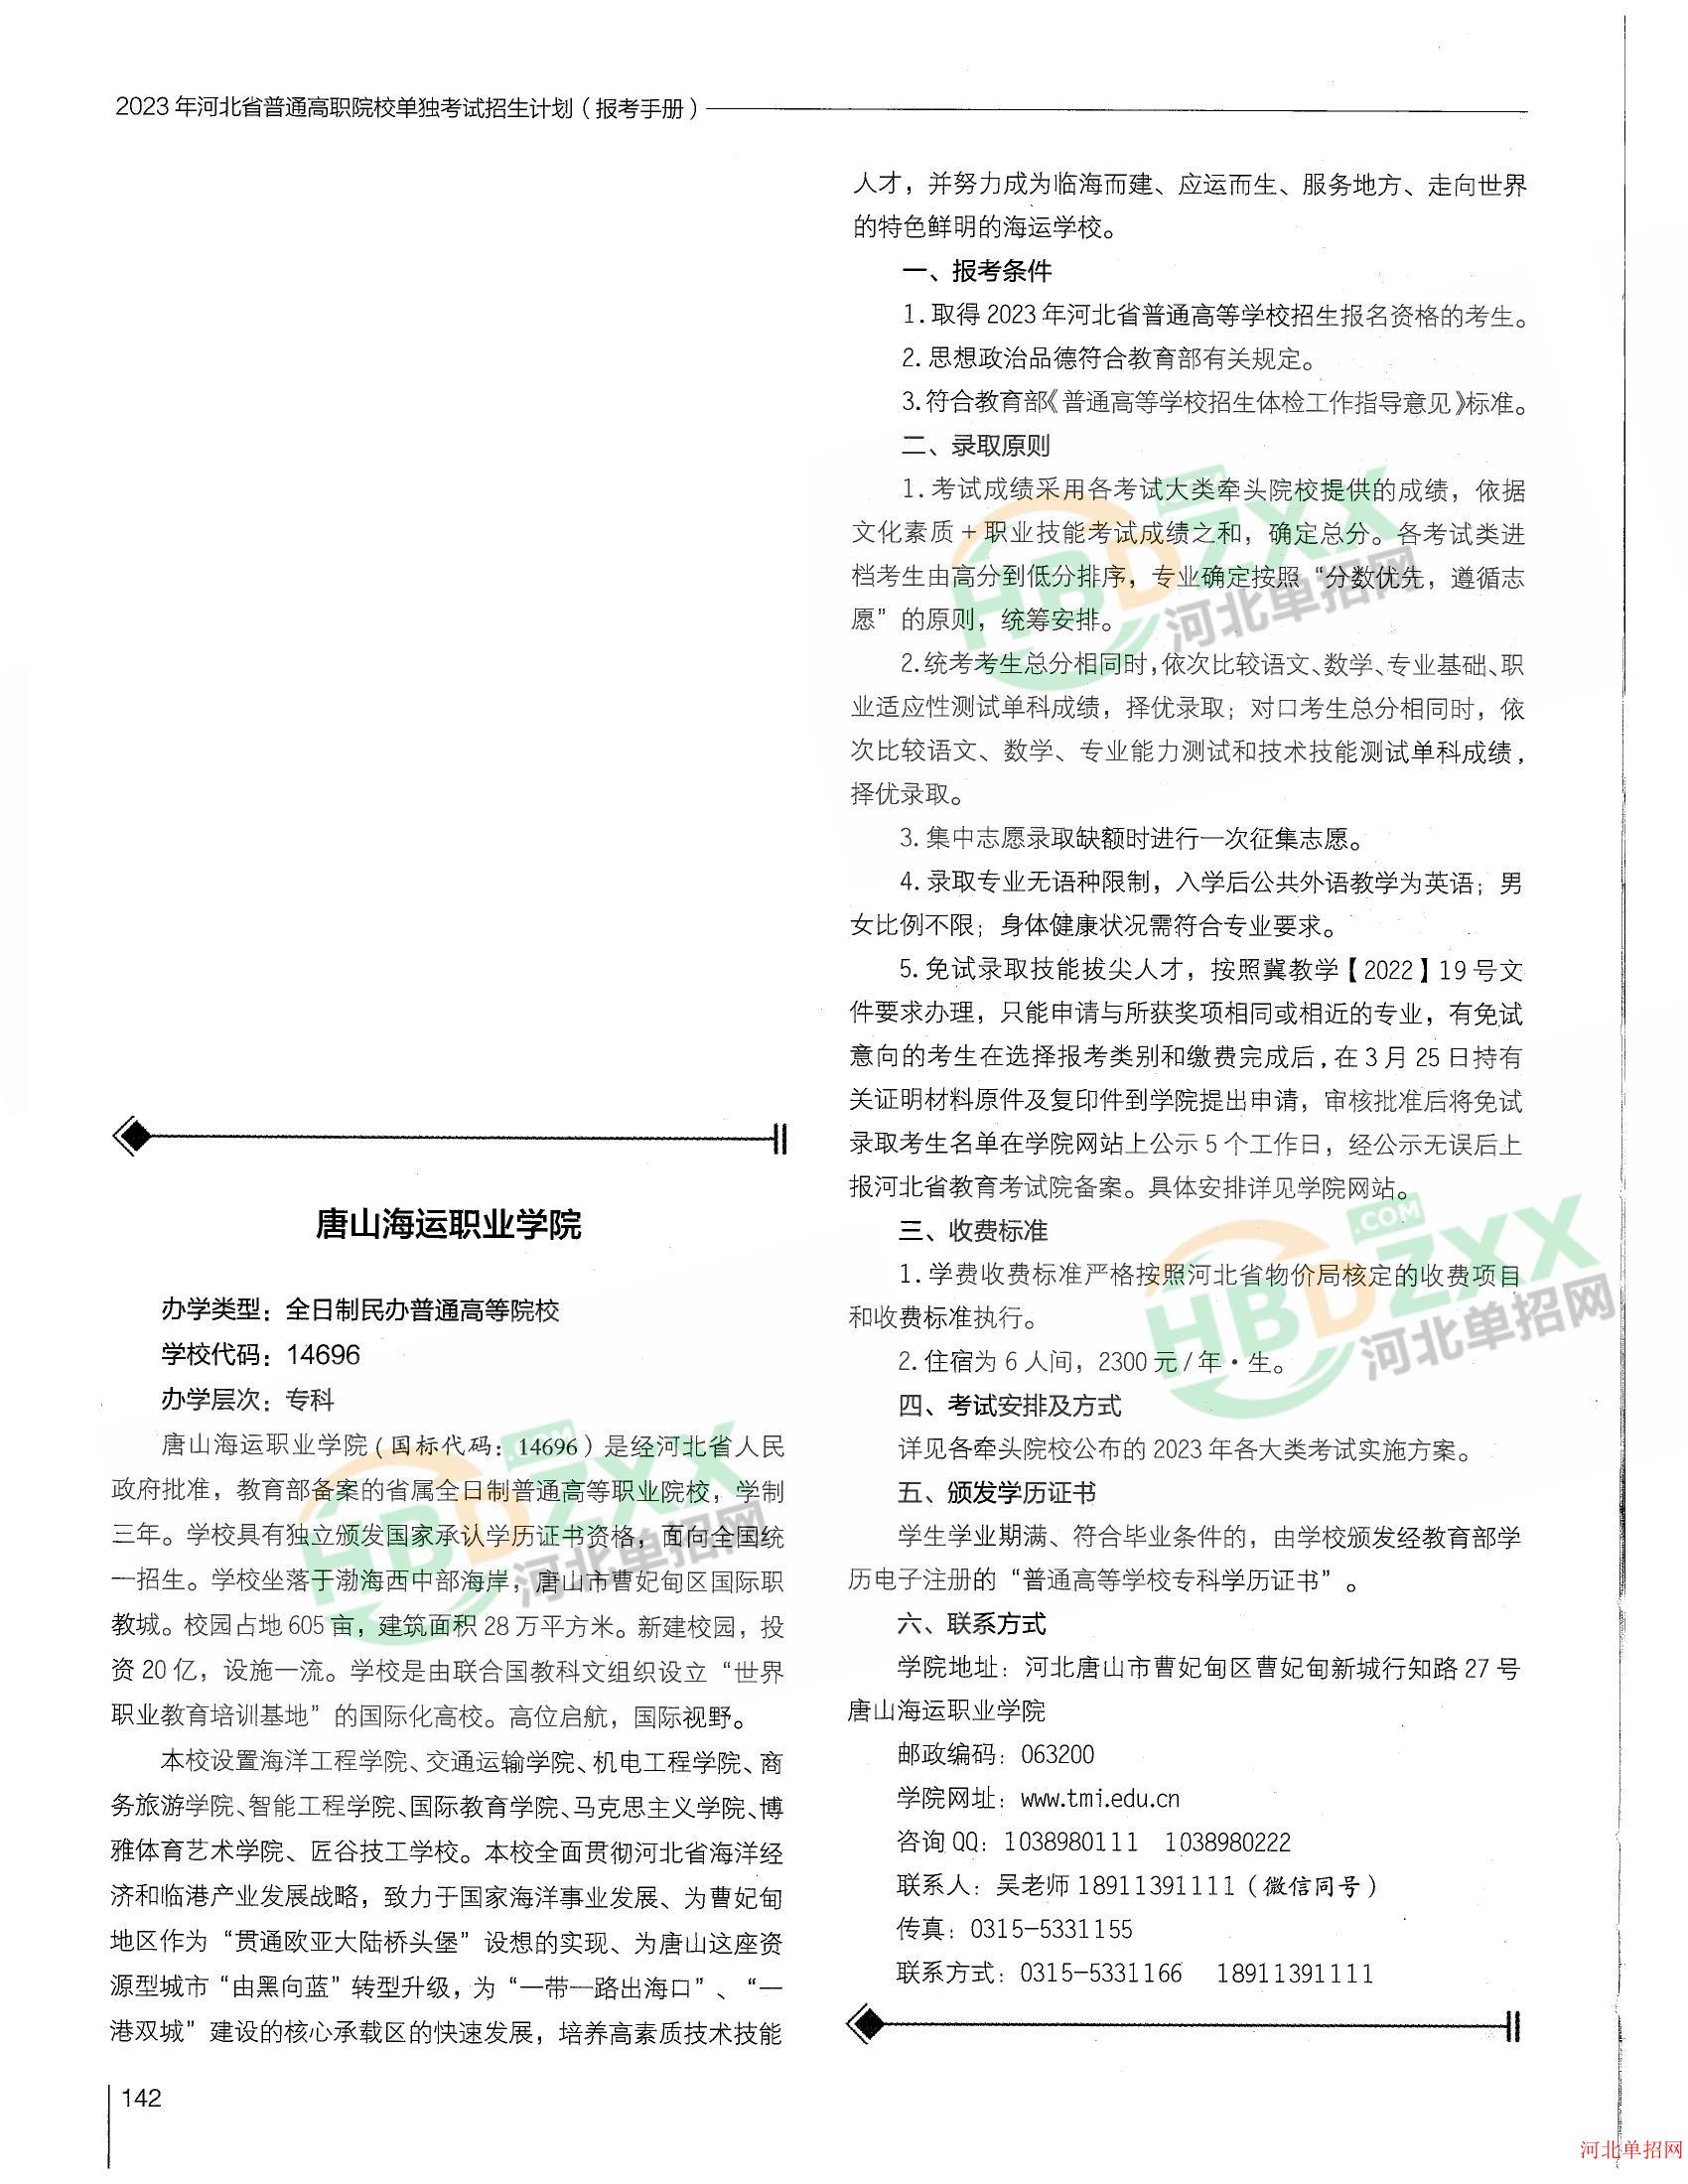 唐山海运职业学院2023年单招招生简章 图2